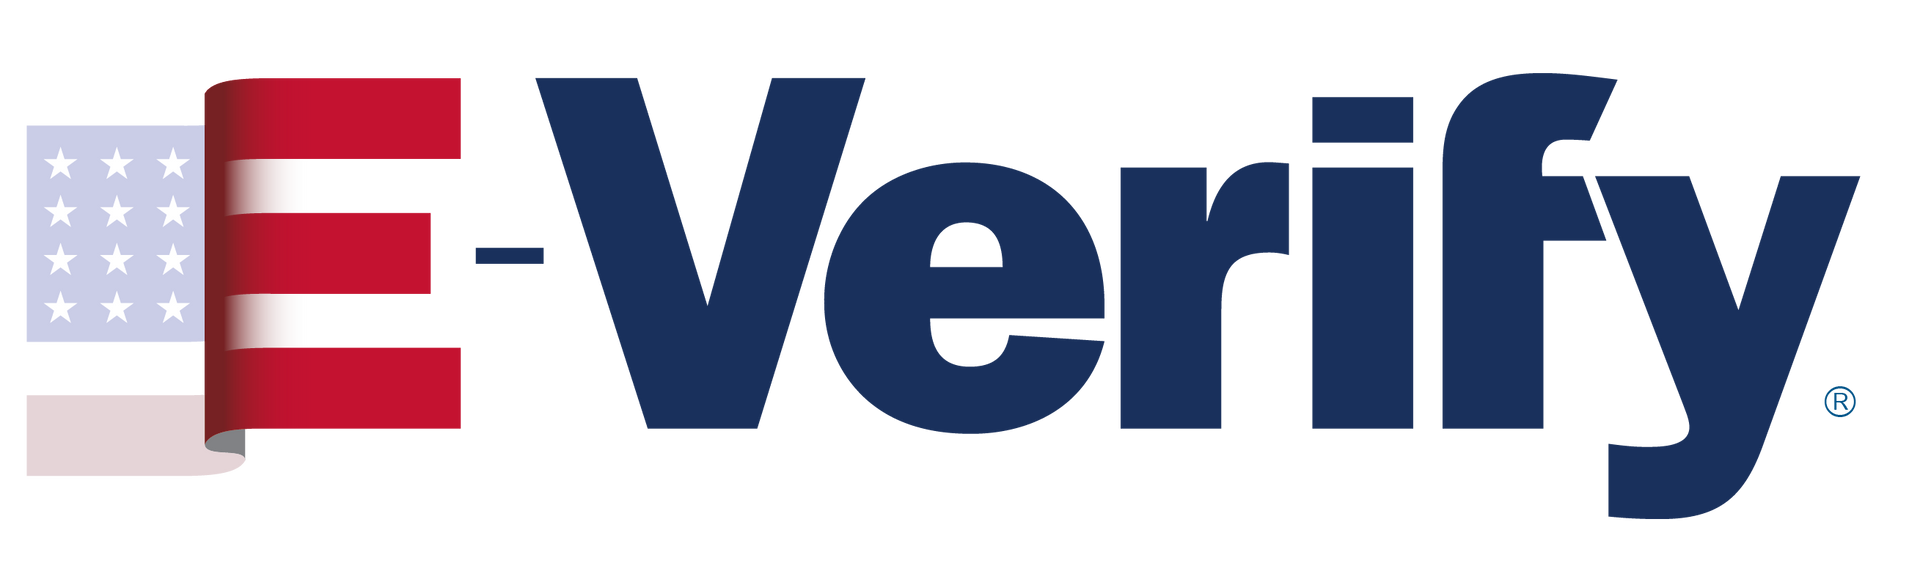 E-Verify system